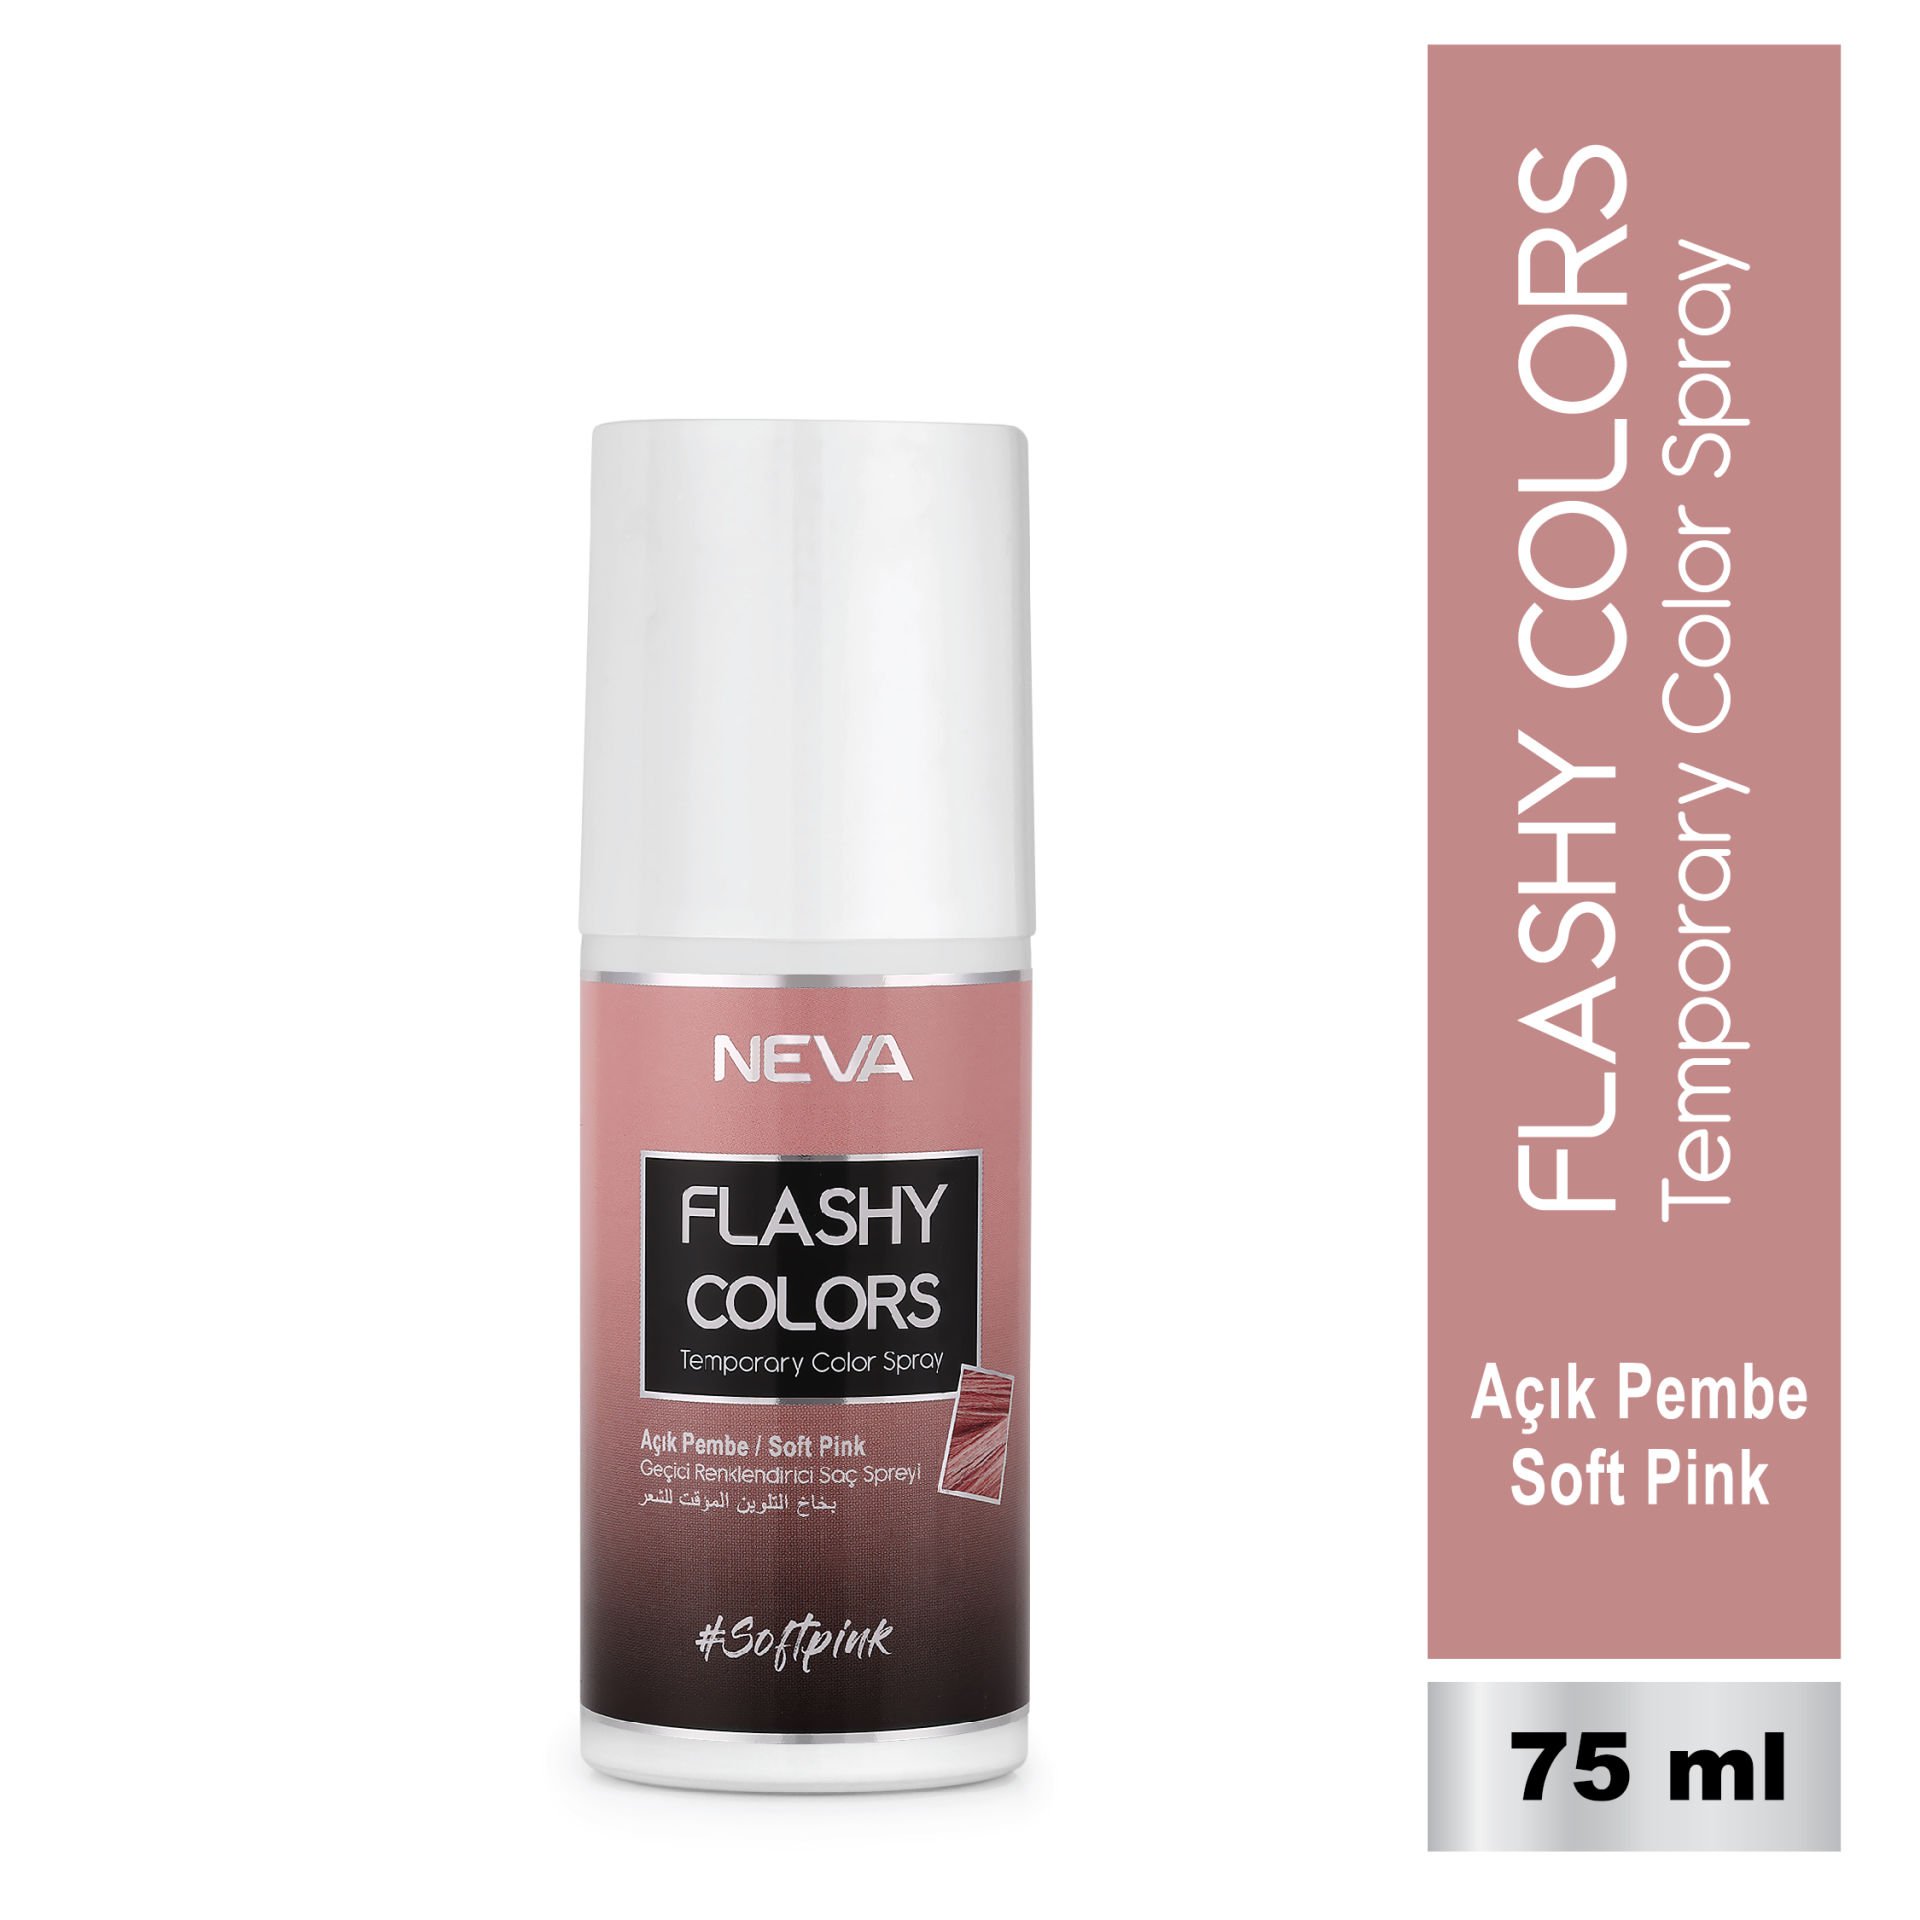 Flashy Colors Geçici Renk Saç Spreyi - Açık Pembe 75 ml